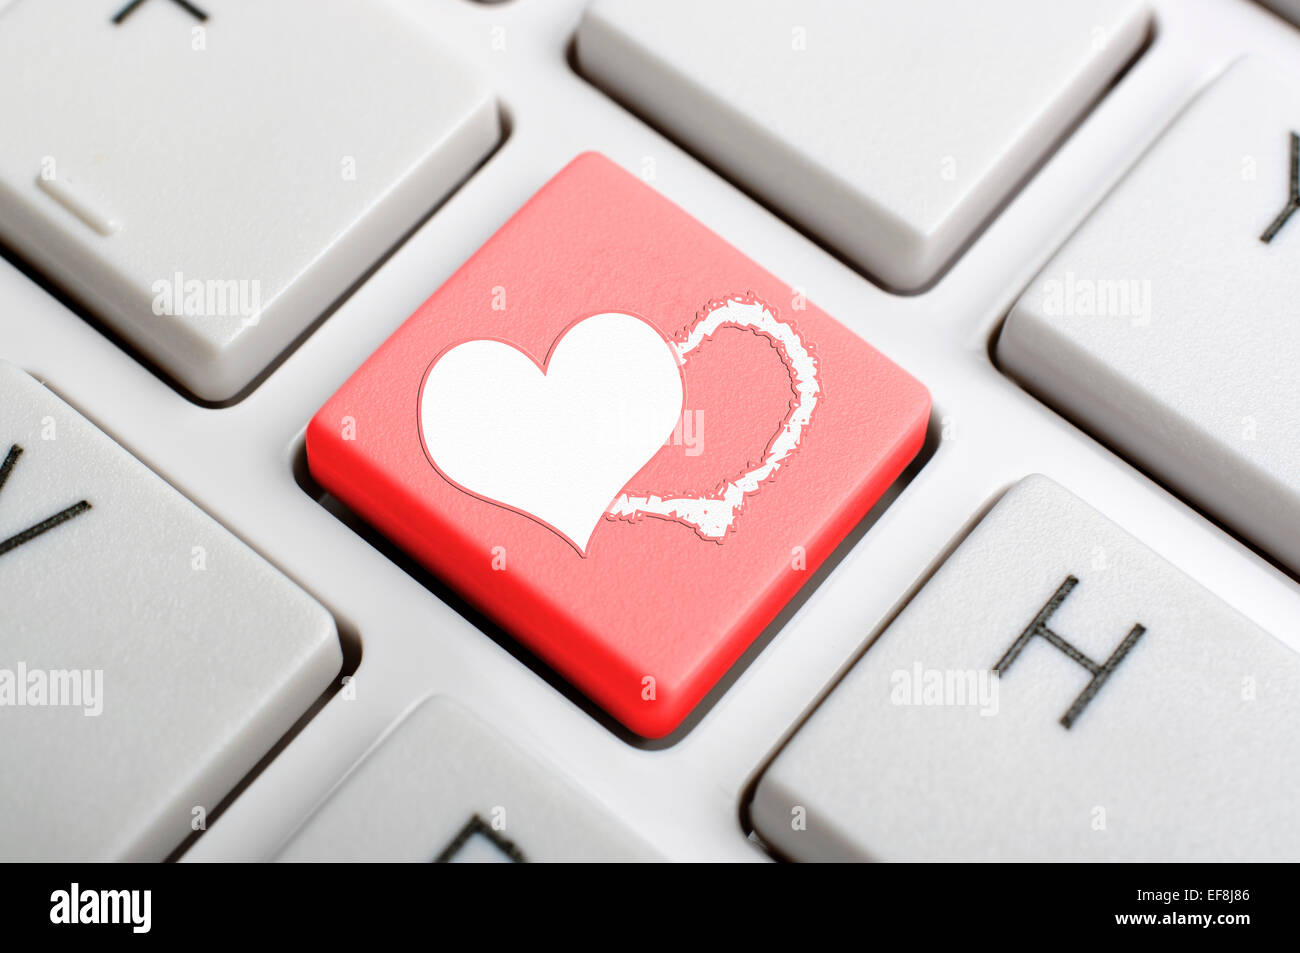 Rotes Herz-Sym-Taste auf der Tastatur Stockfotografie - Alamy